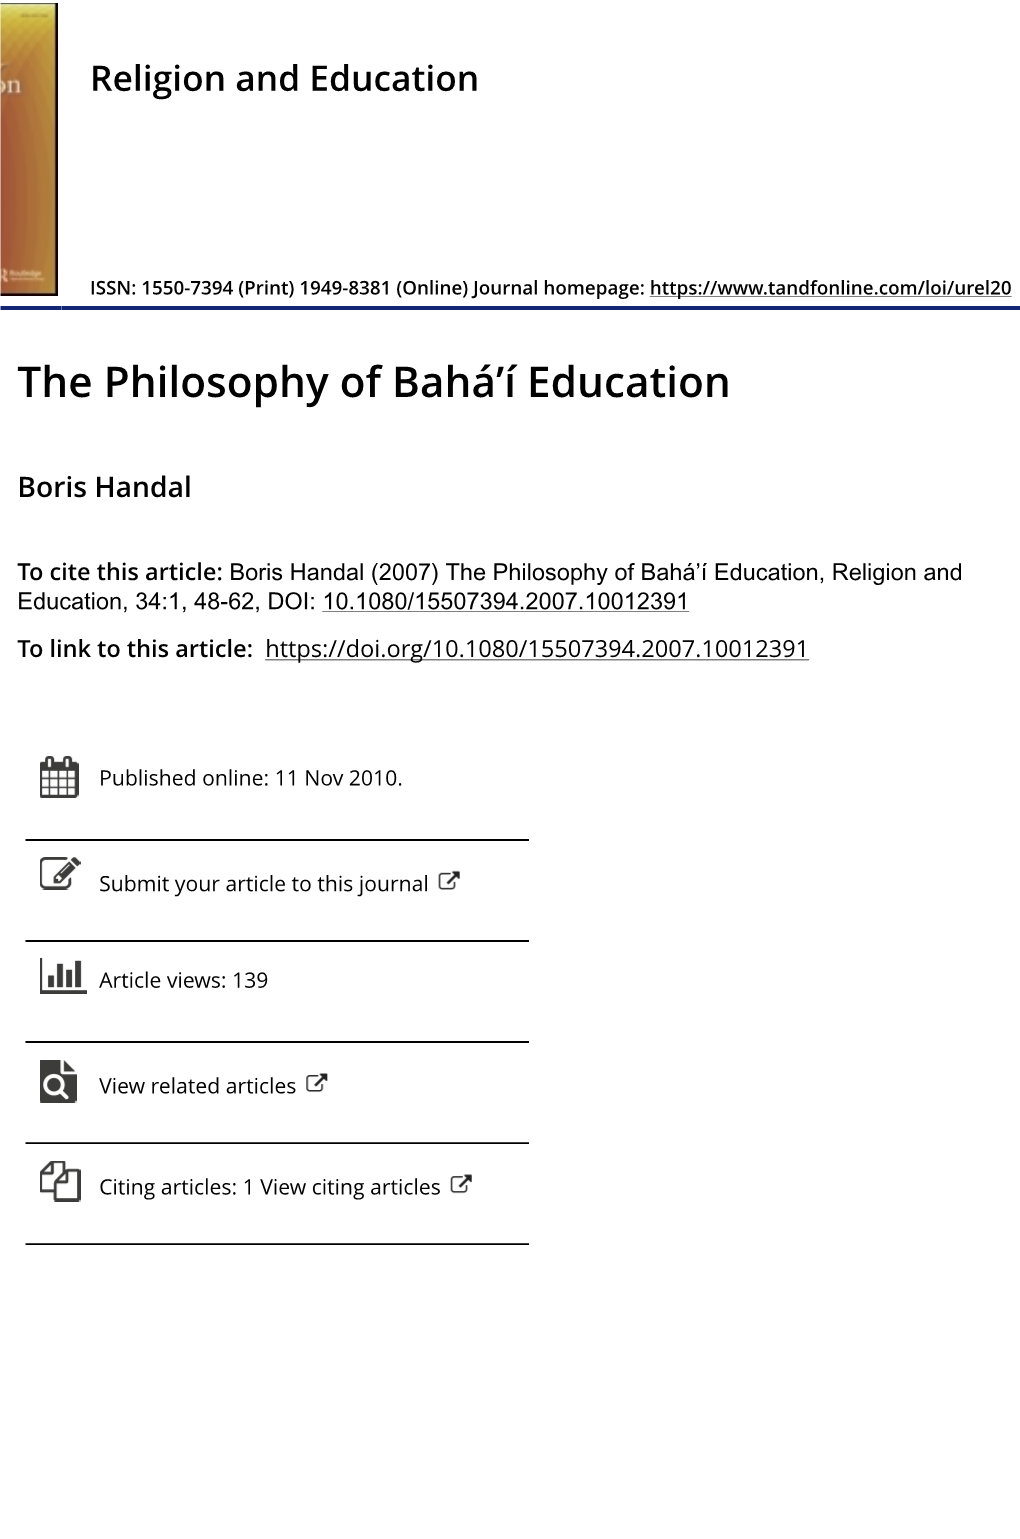 The Philosophy of Bahá'í Education